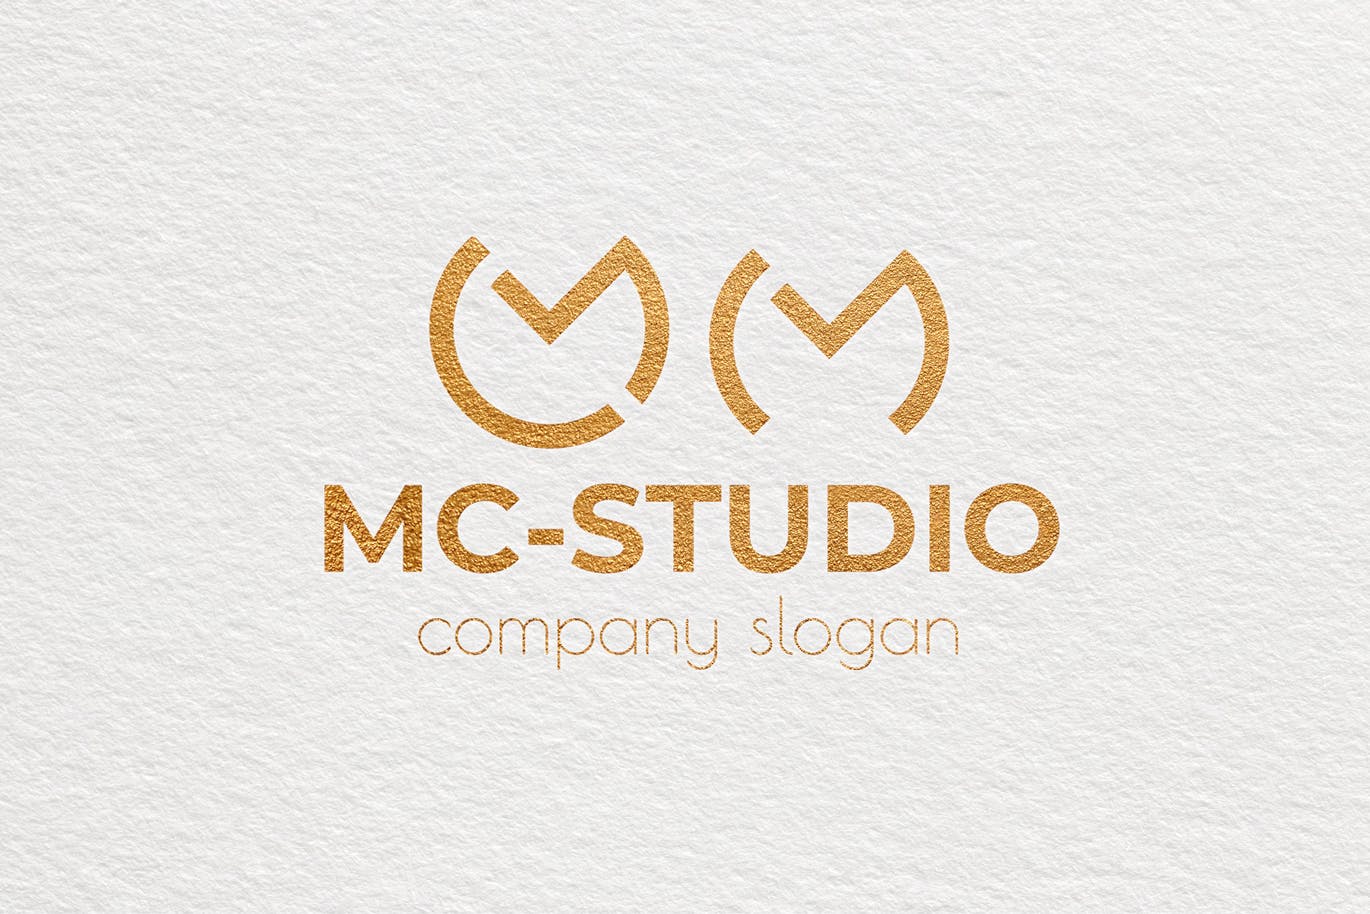 创意工作室图形Logo设计素材库精选模板 Mc Studio Creative Logo Template插图(3)